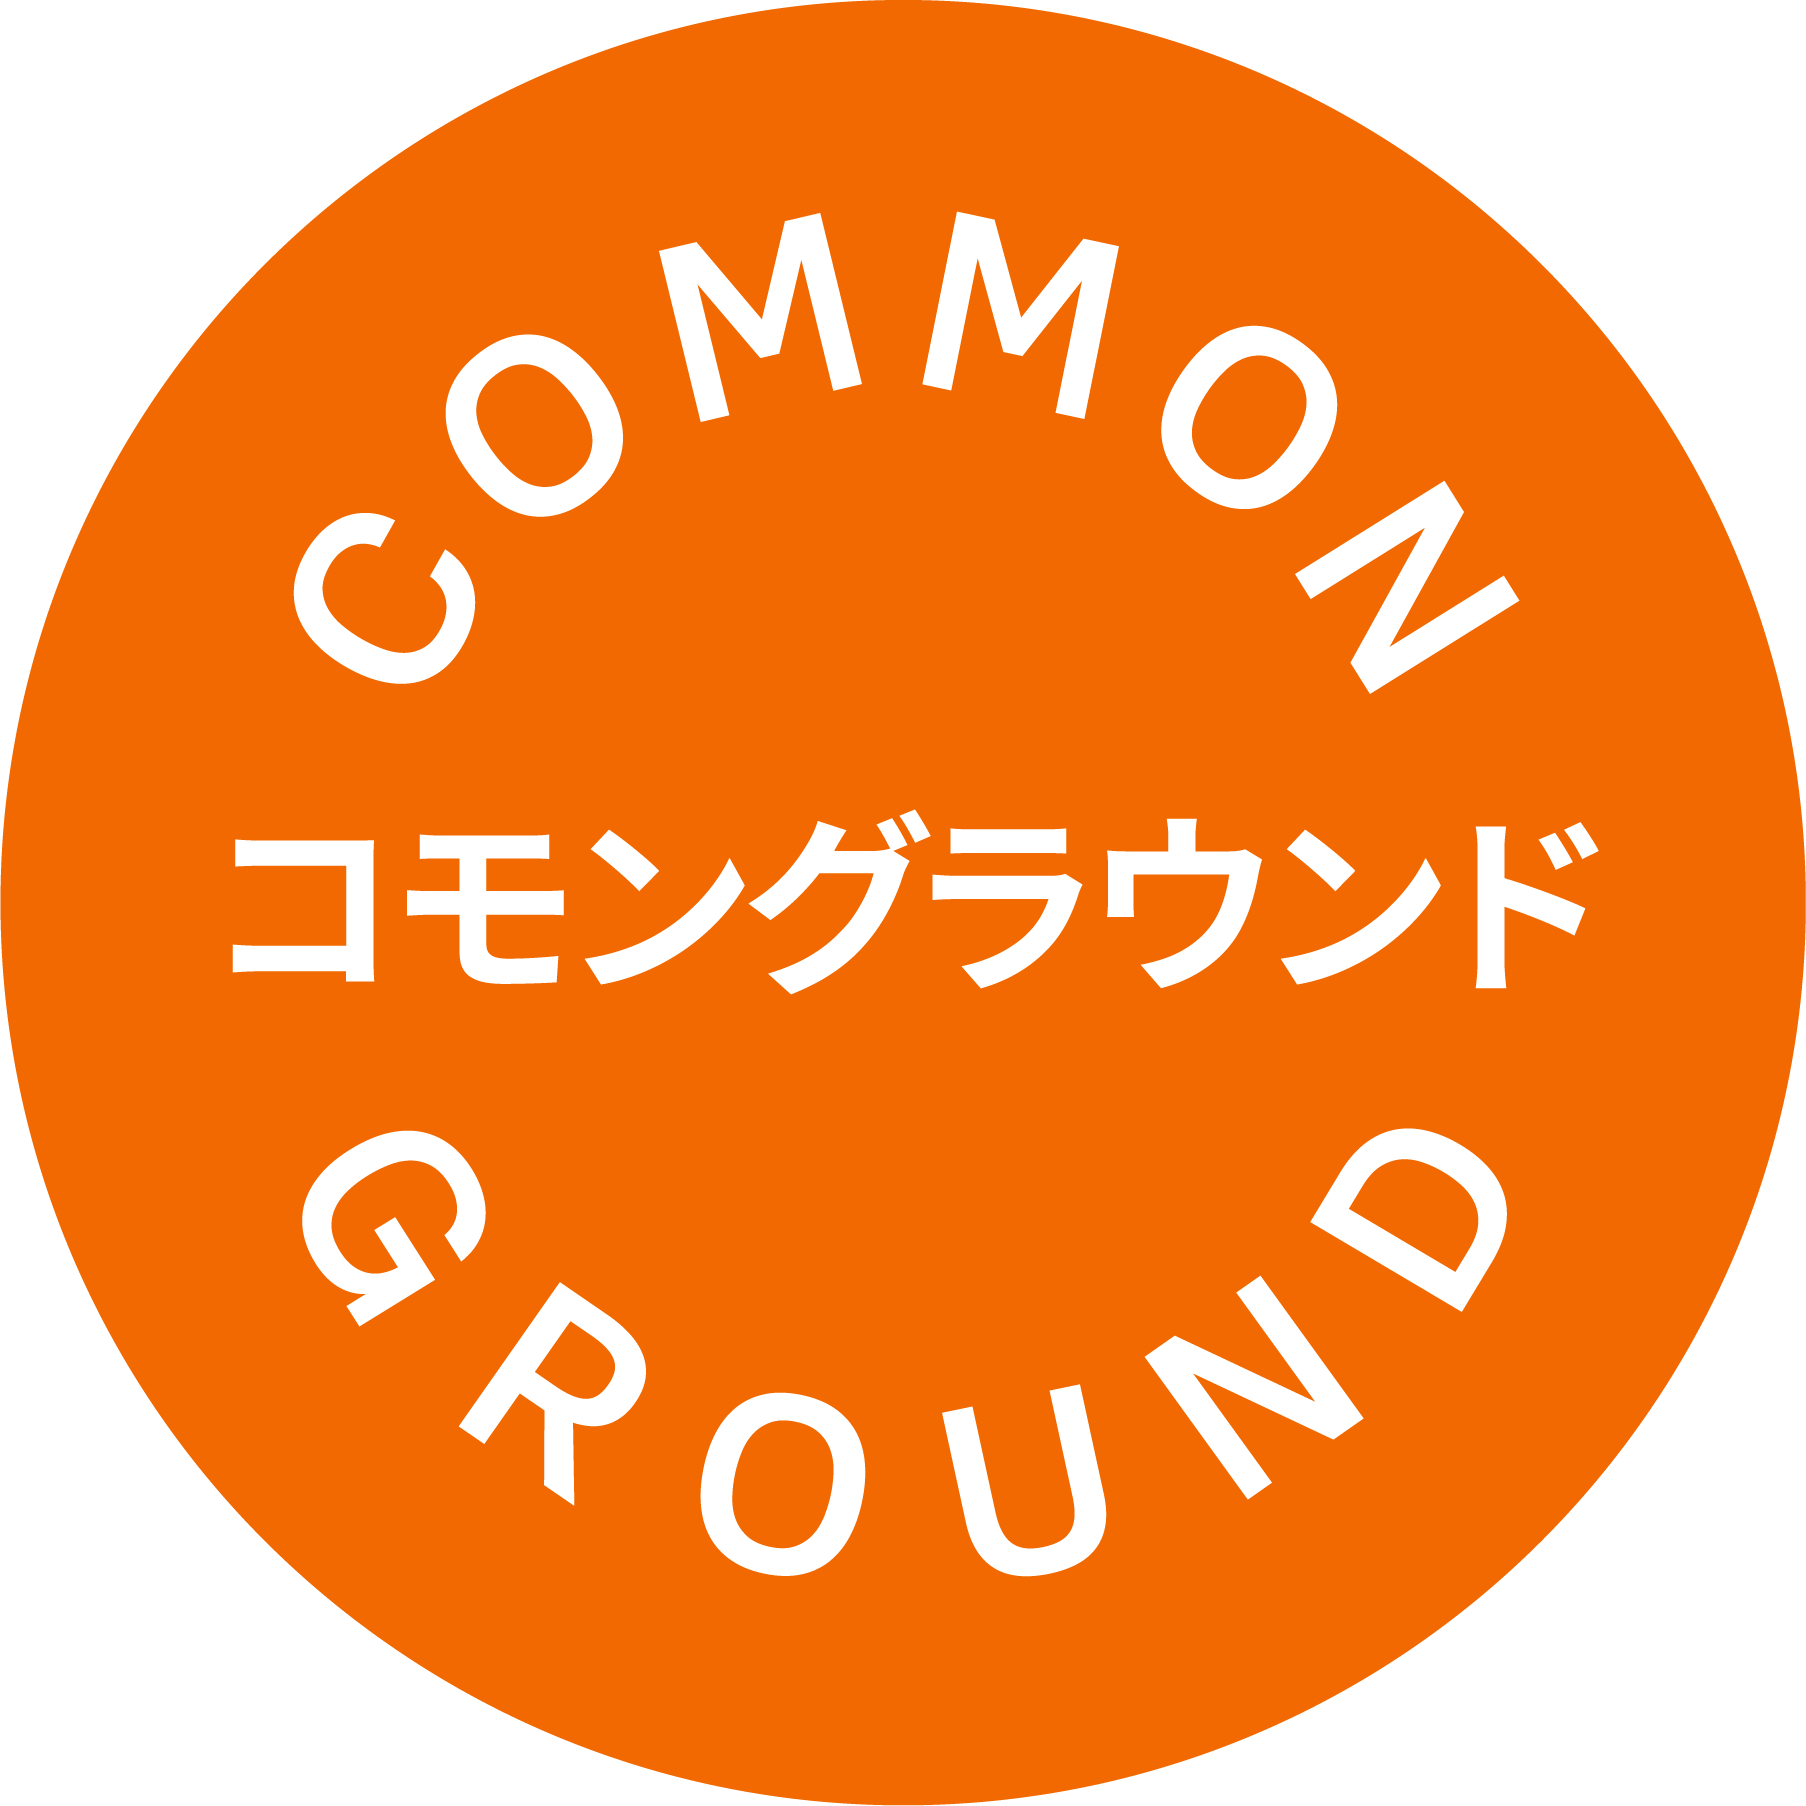 KesselsKramer-CommonGround-logo